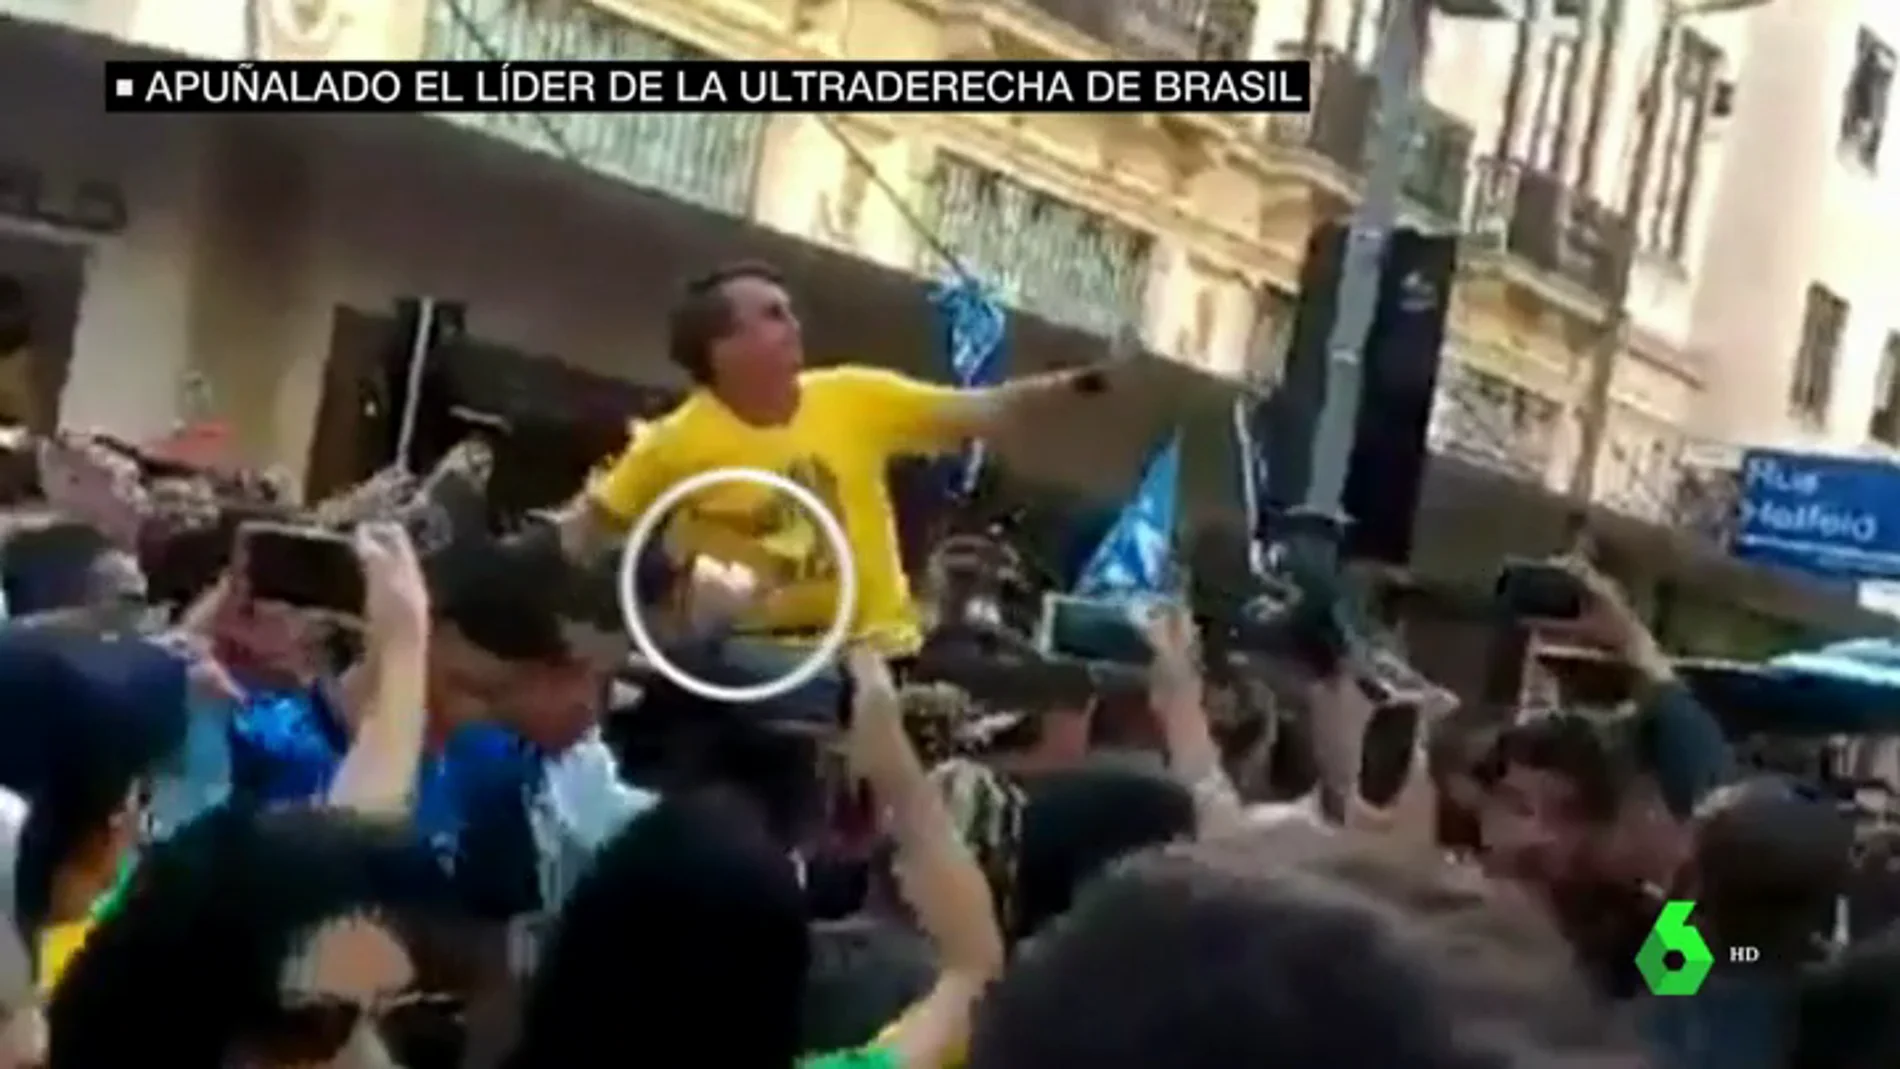 El impactante vídeo del apuñalamiento al candidato ultraderechista Jair Bolsonaro